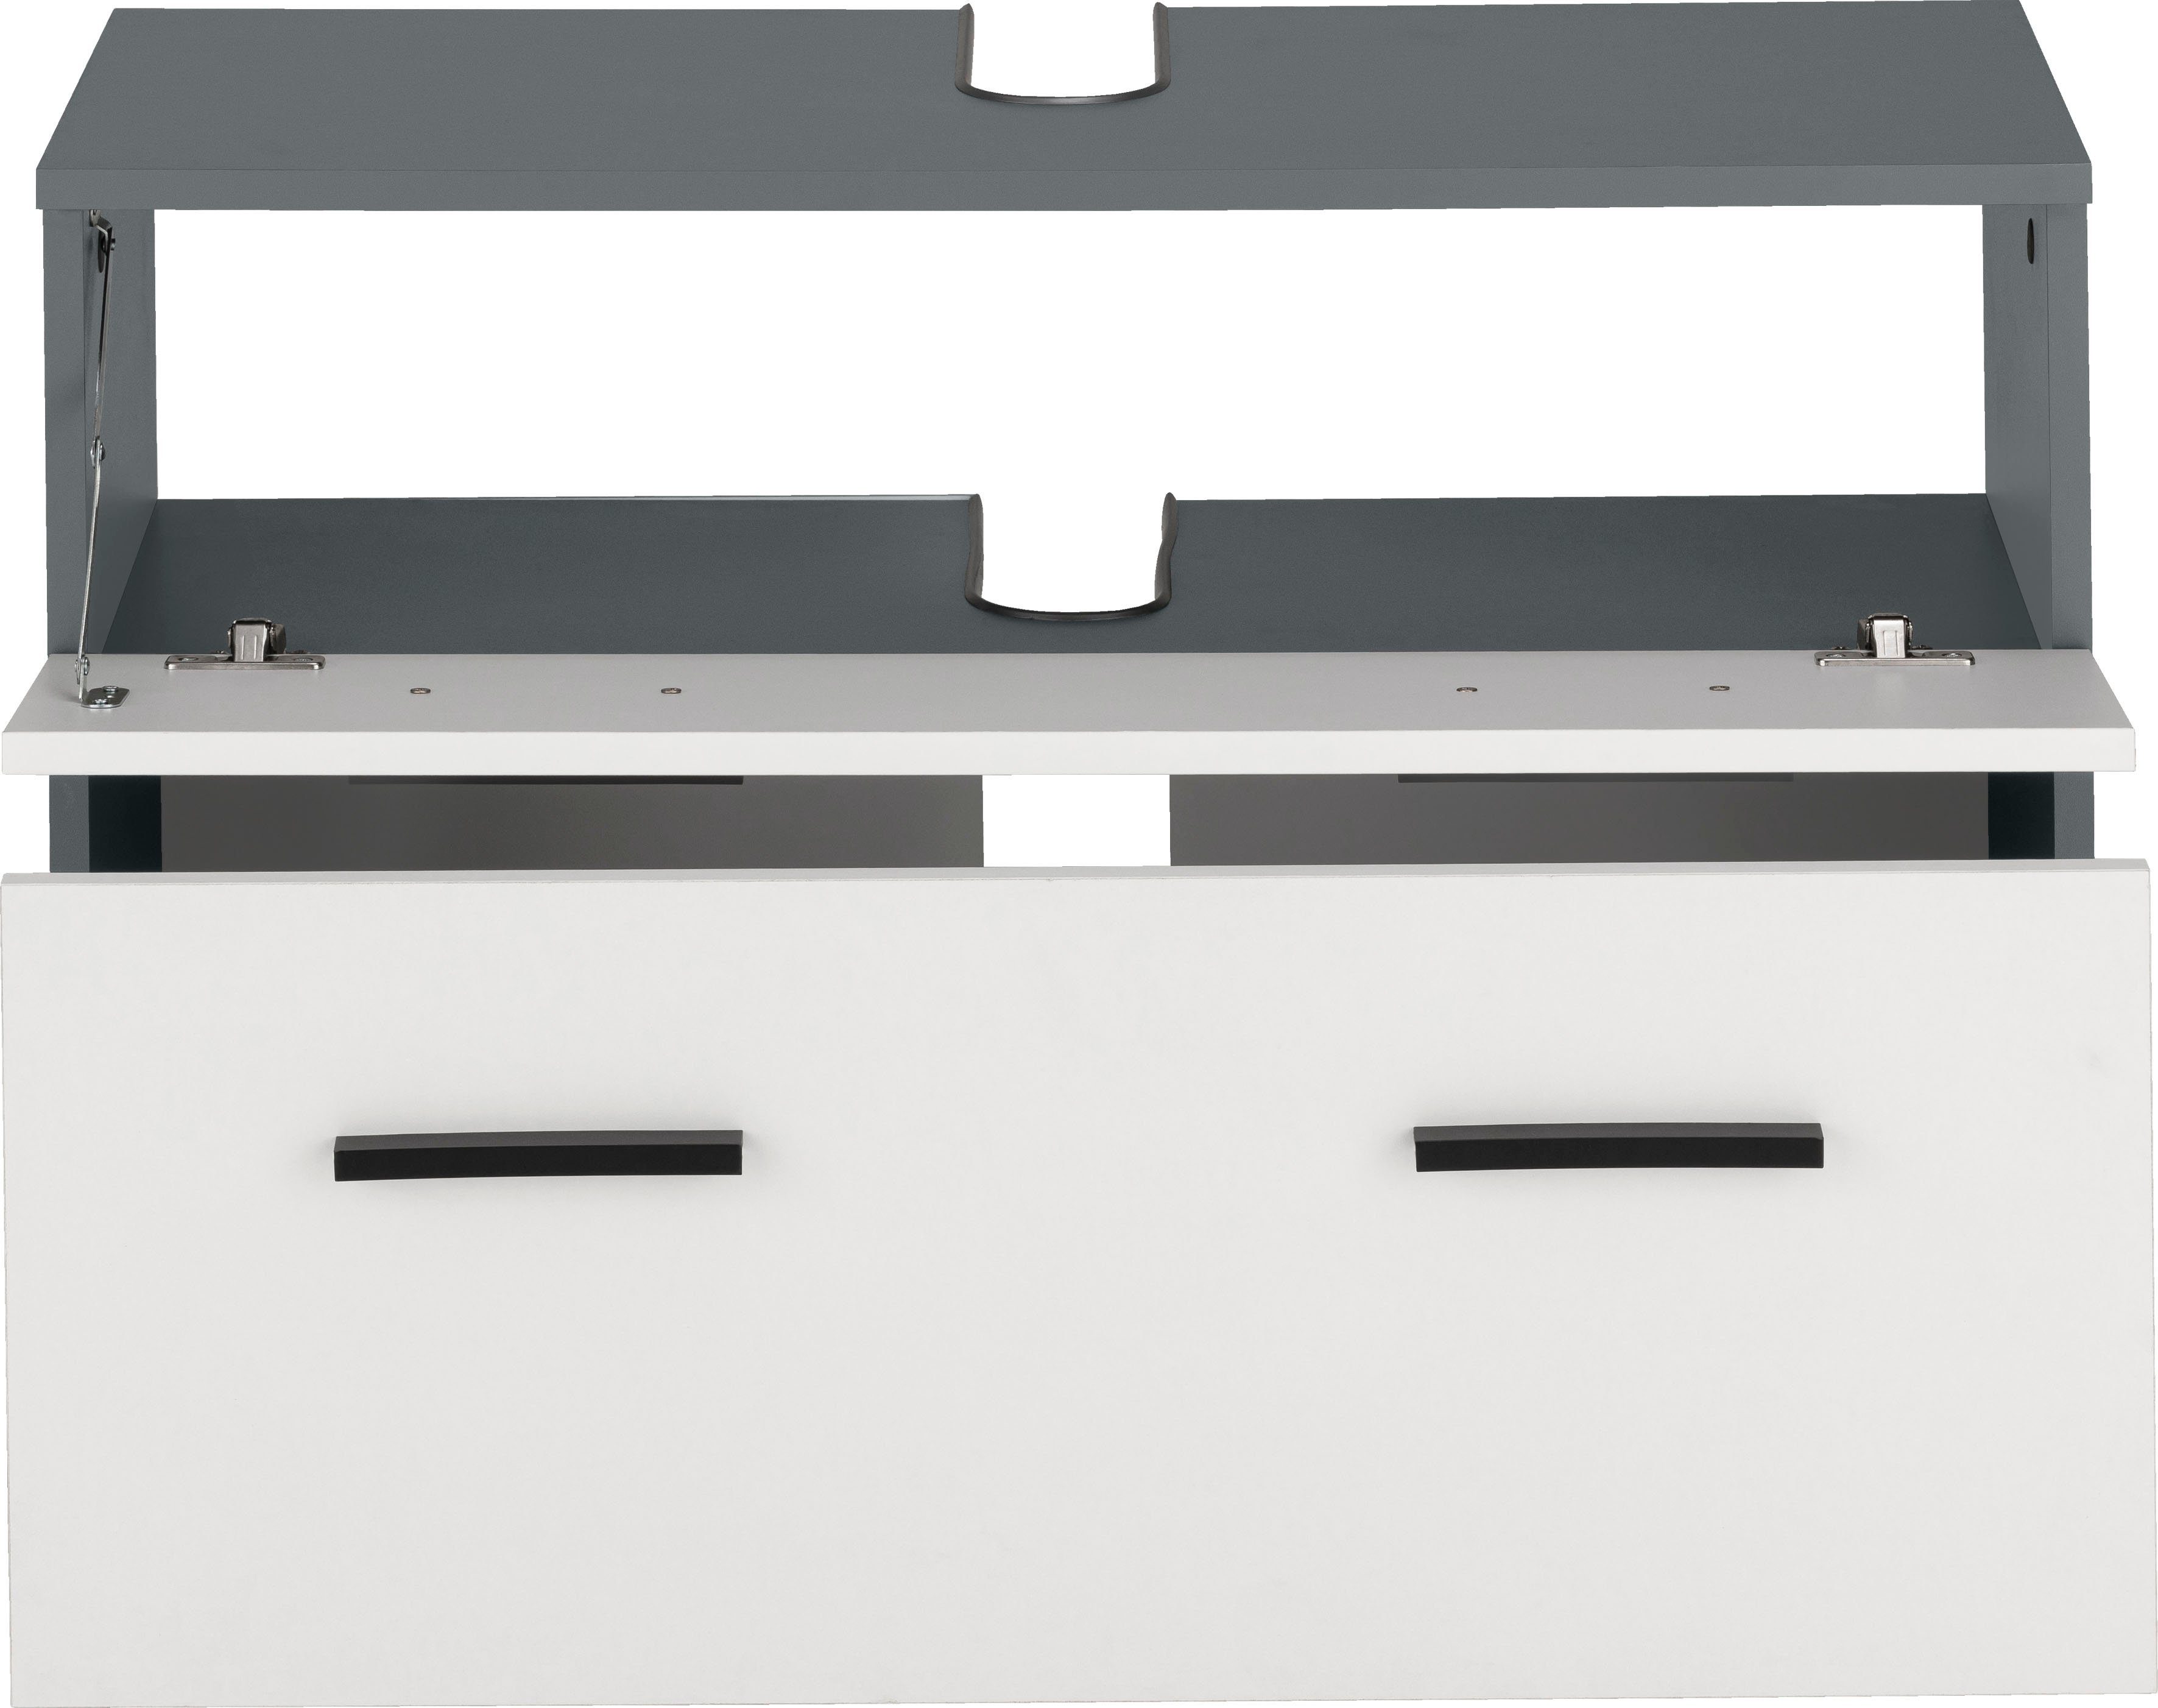 INOSIGN Waschbeckenunterschrank Skara mit Höhe 55 cm, Griffe, anthrazit/weiß cm schwarze Breite 80 und Schubkasten, Klappe